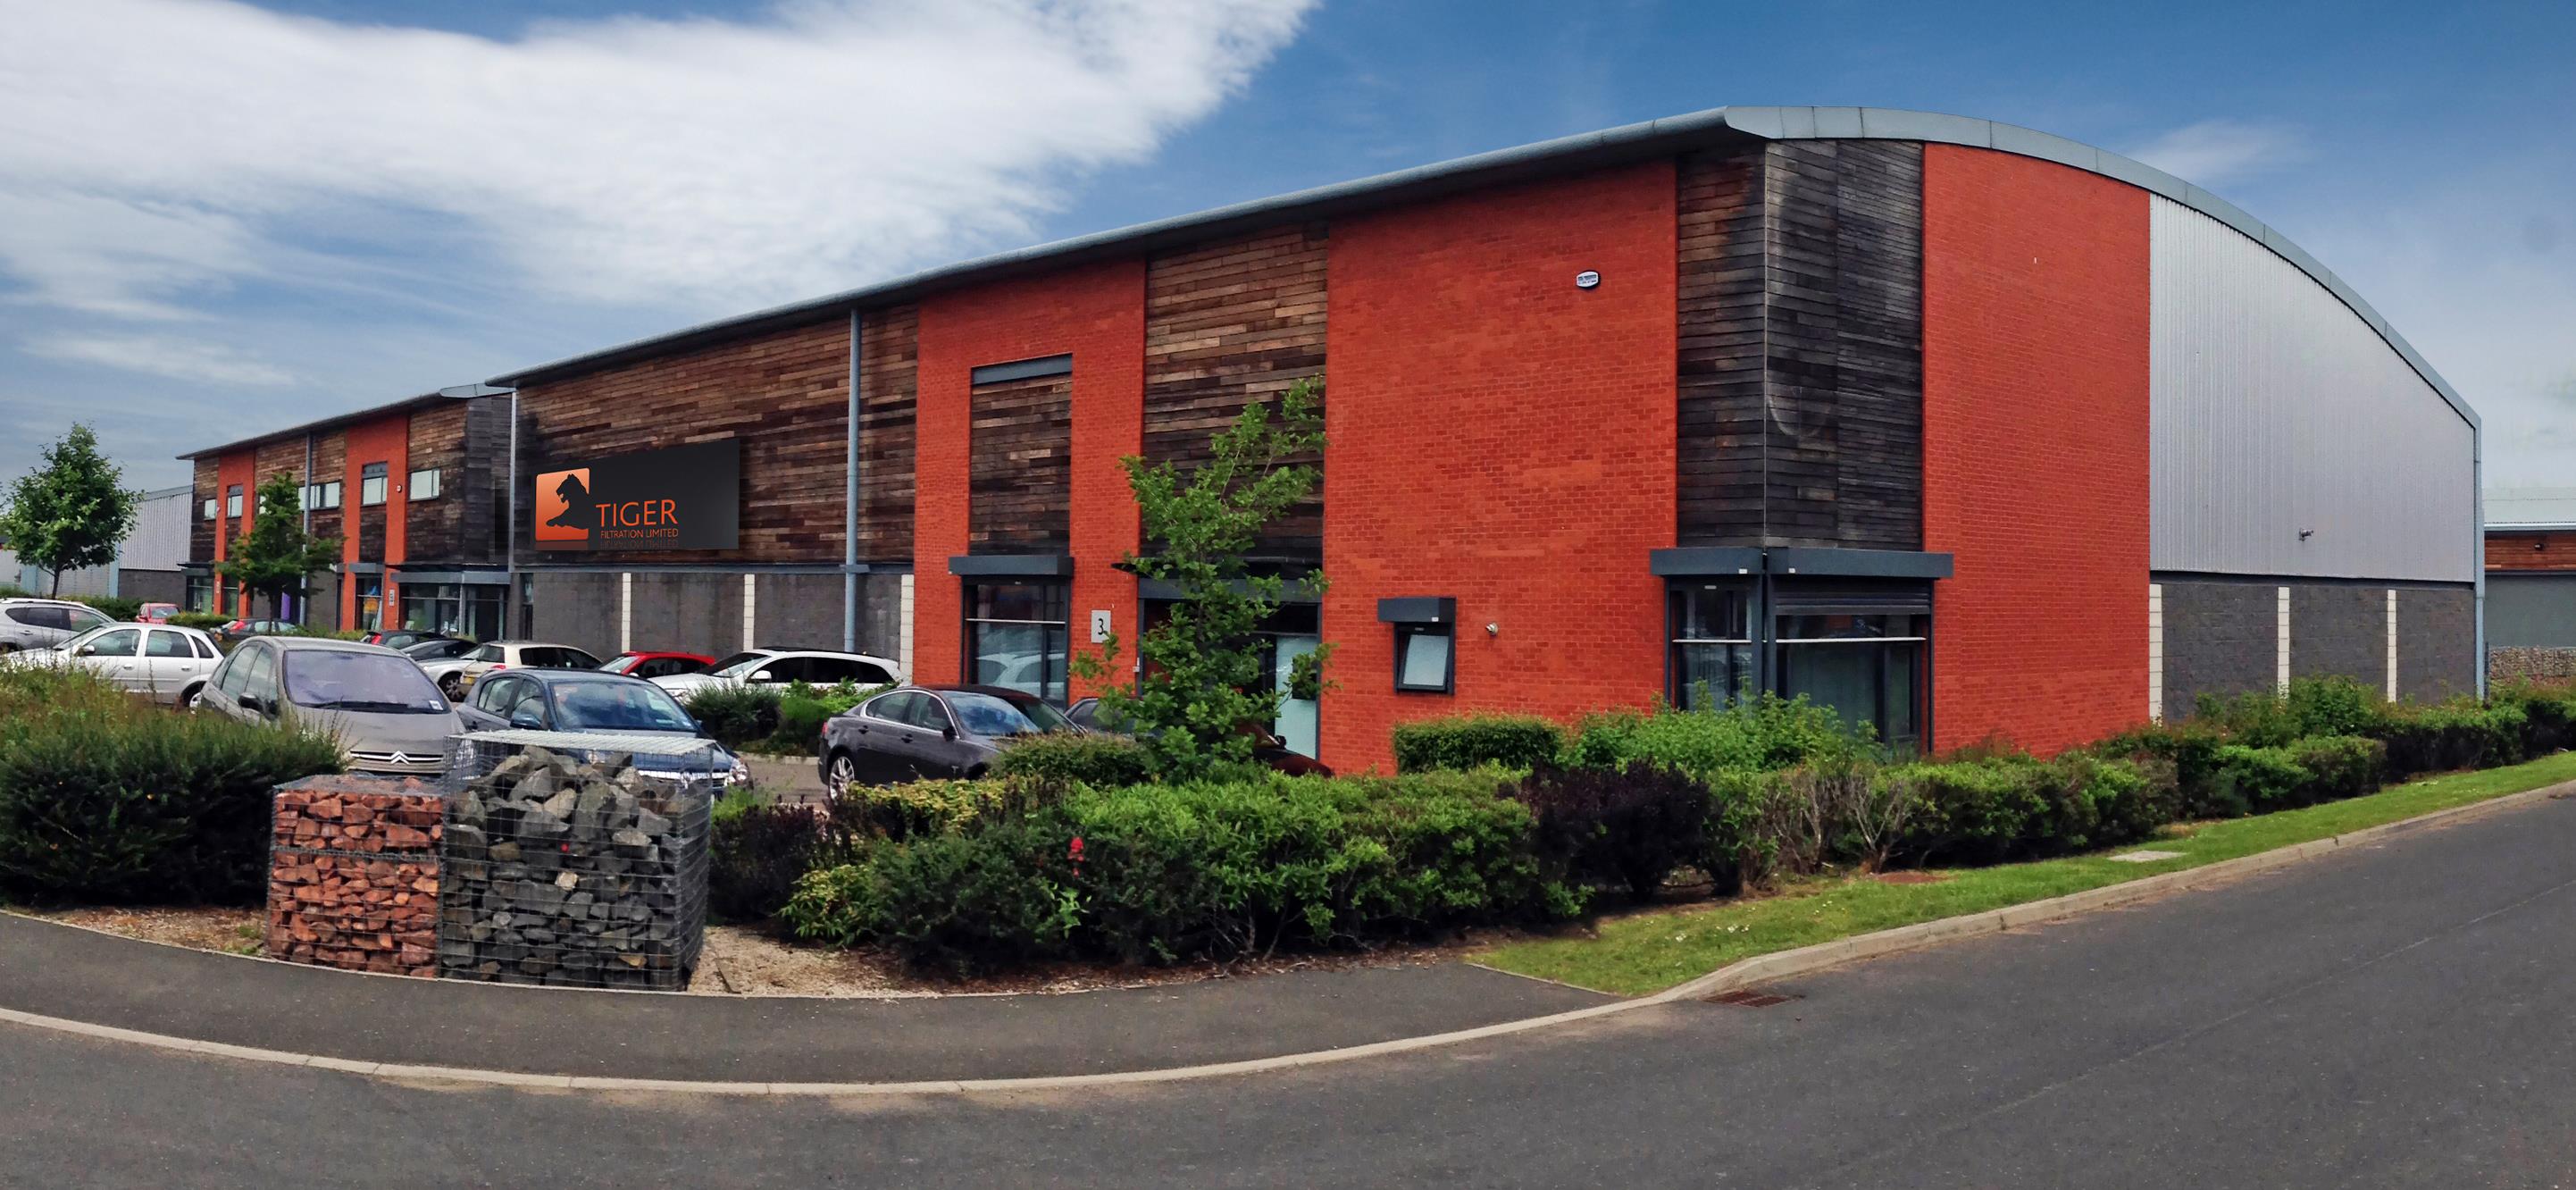 Tiger Filtration's facility in Sunderland, UK.